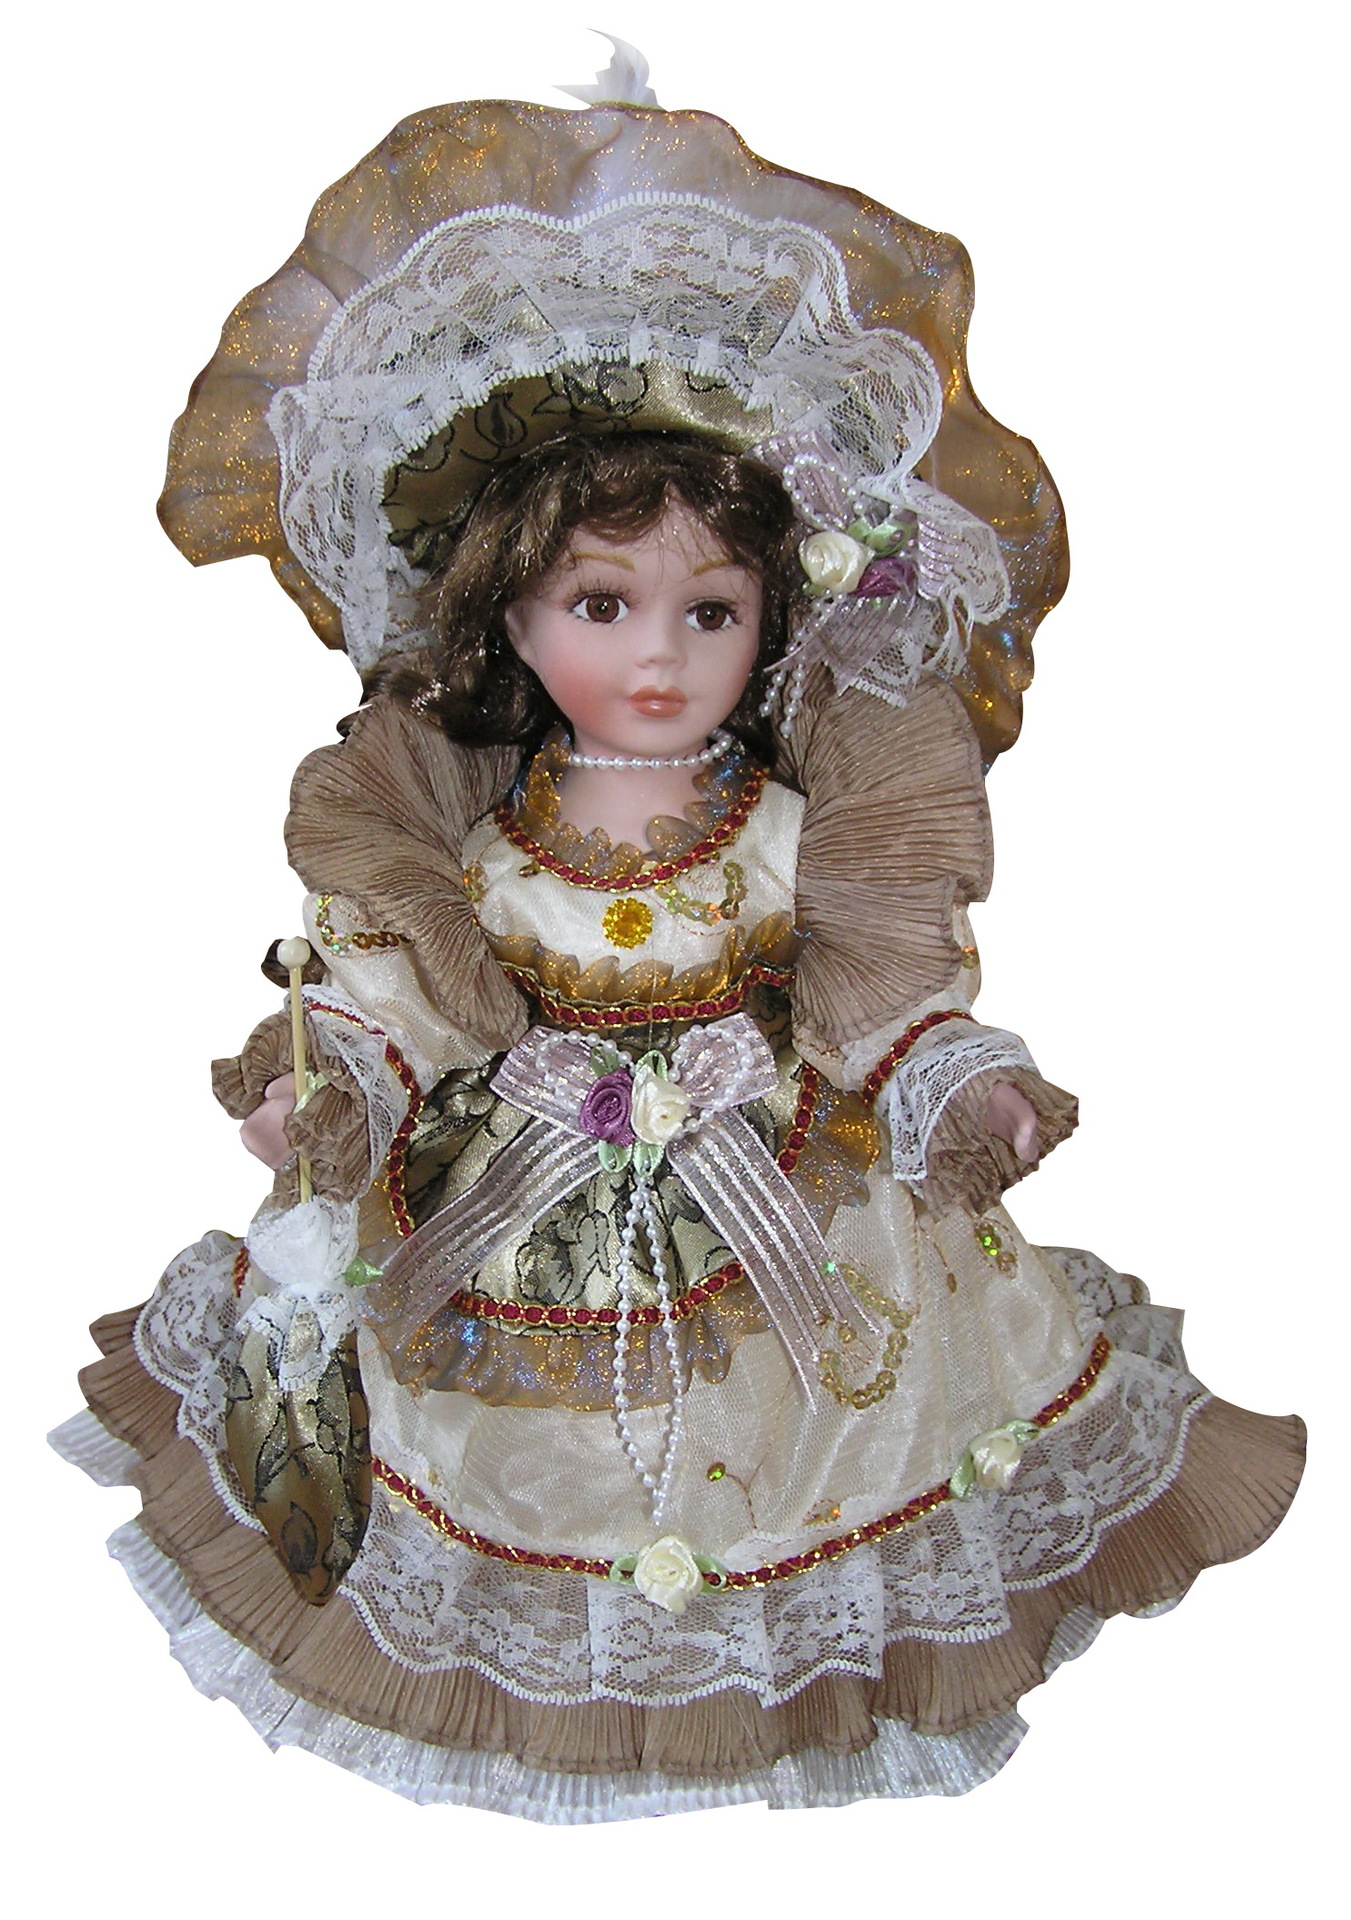 30cm 欧式维多利亚风格陶瓷娃娃厂家直销